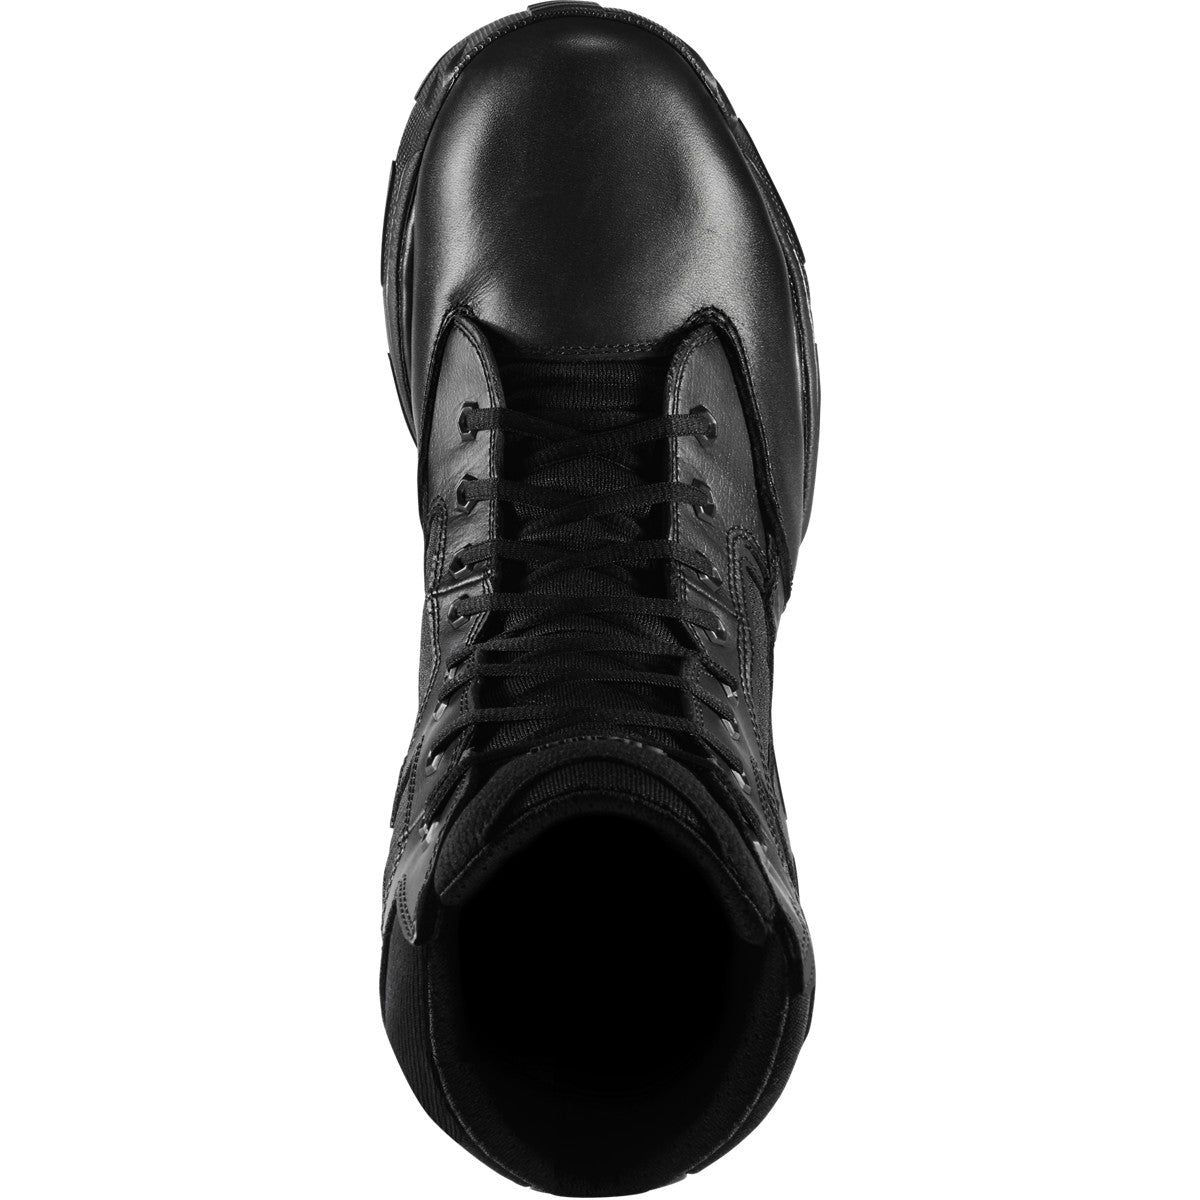 Danner Men's Striker Bolt 8" Side Zip WP Duty Boot - Black - 26634  - Overlook Boots